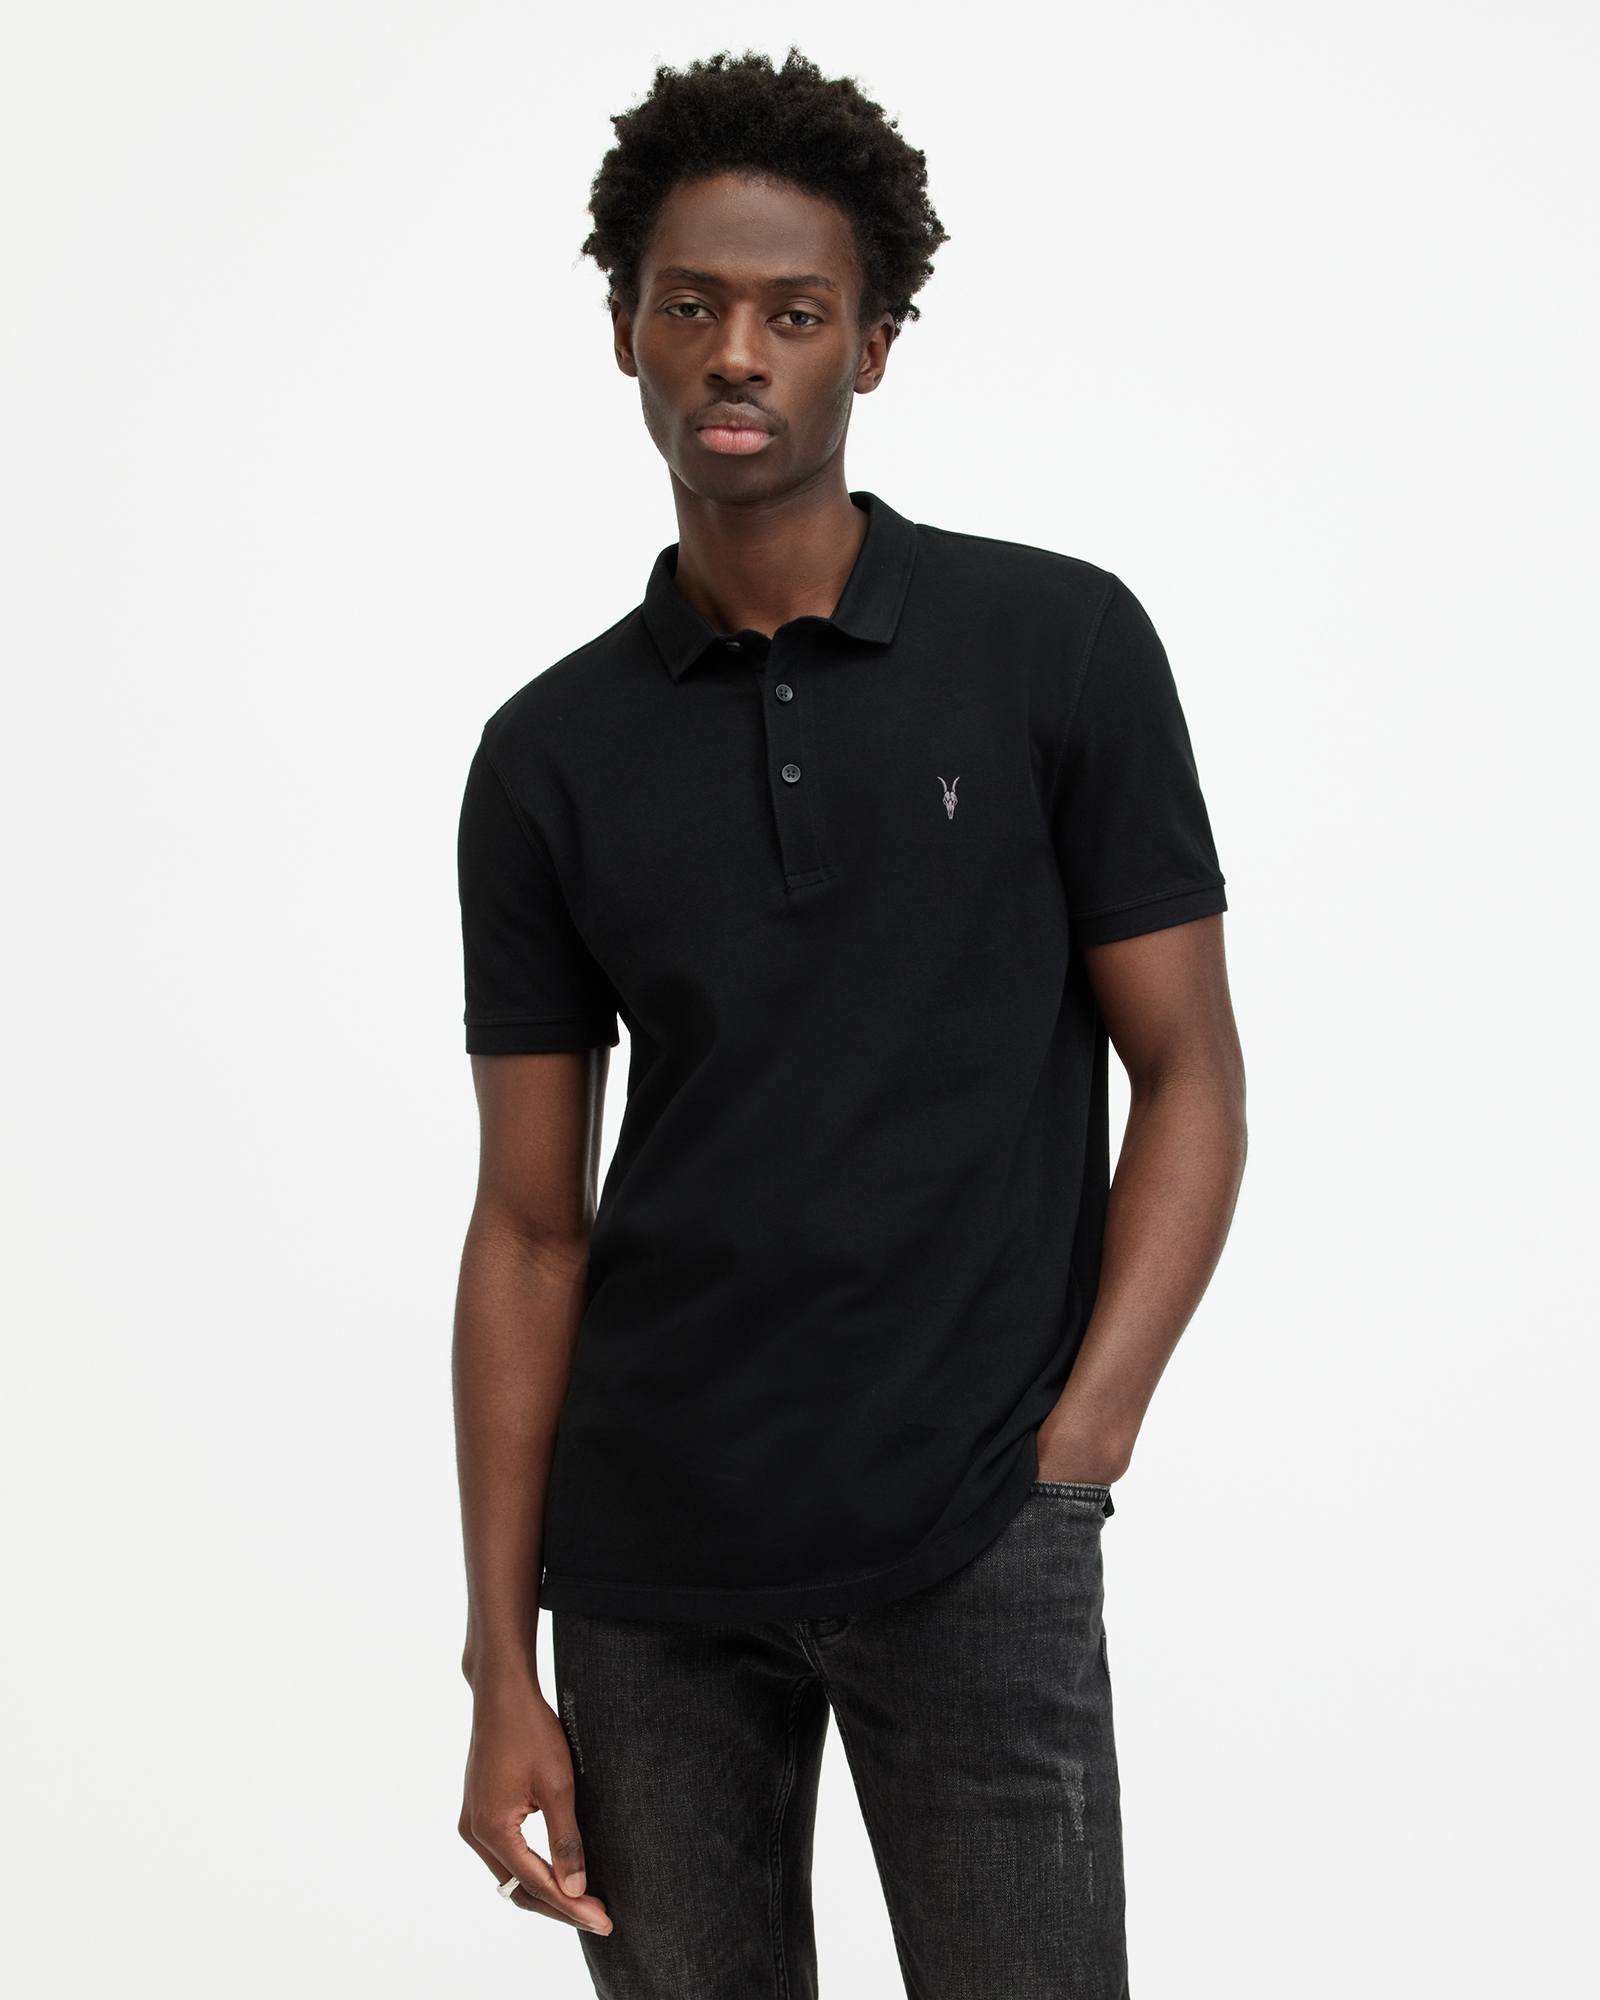 AllSaints Men's Cotton Slim Fit Reform Short Sleeve Polo Shirt, Black, Size: M